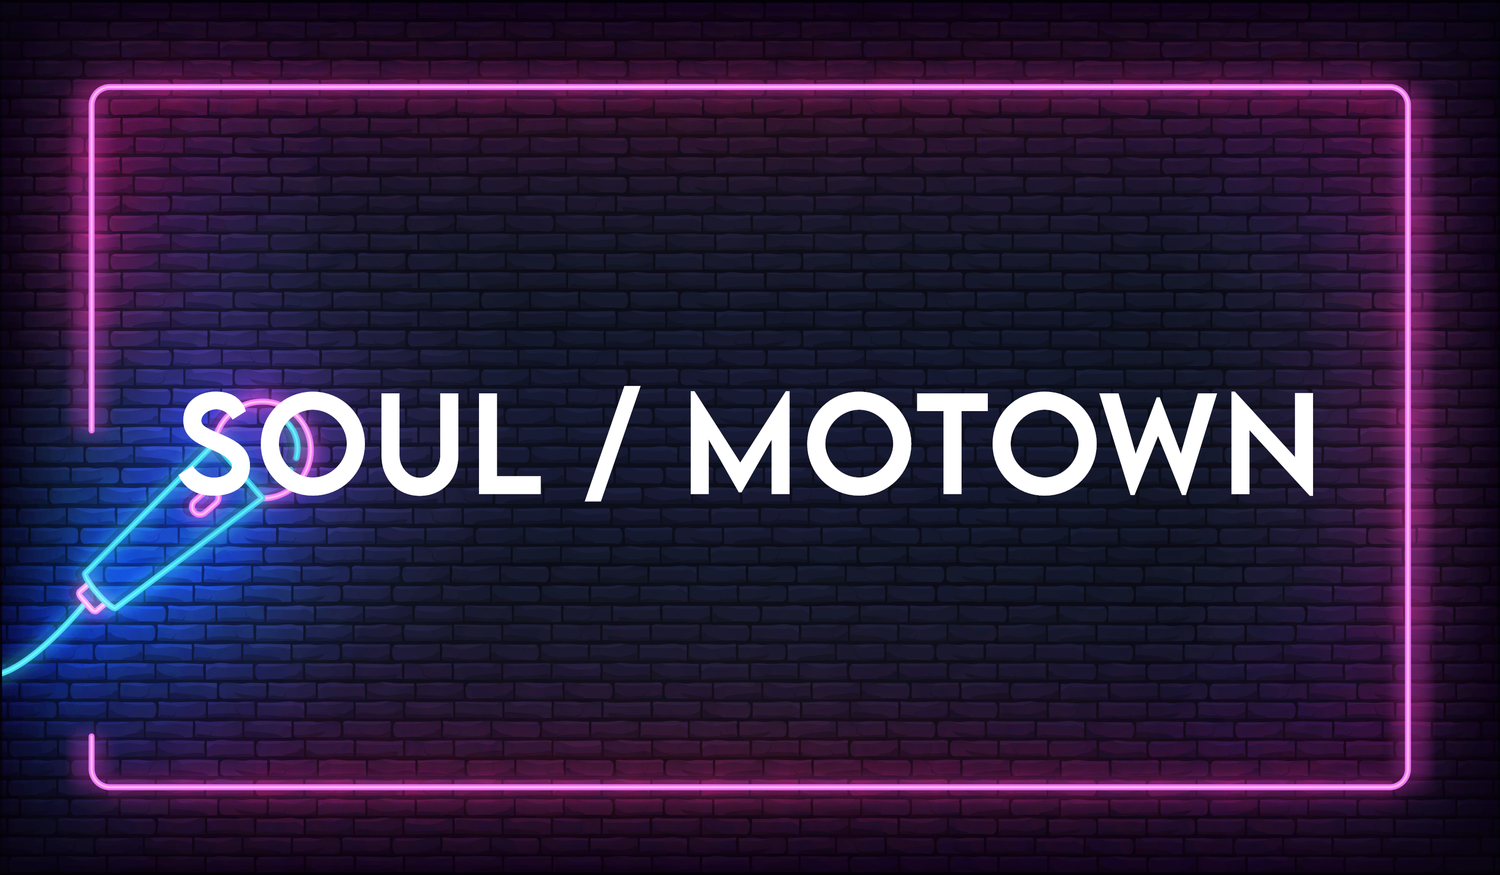 Soul/Motown